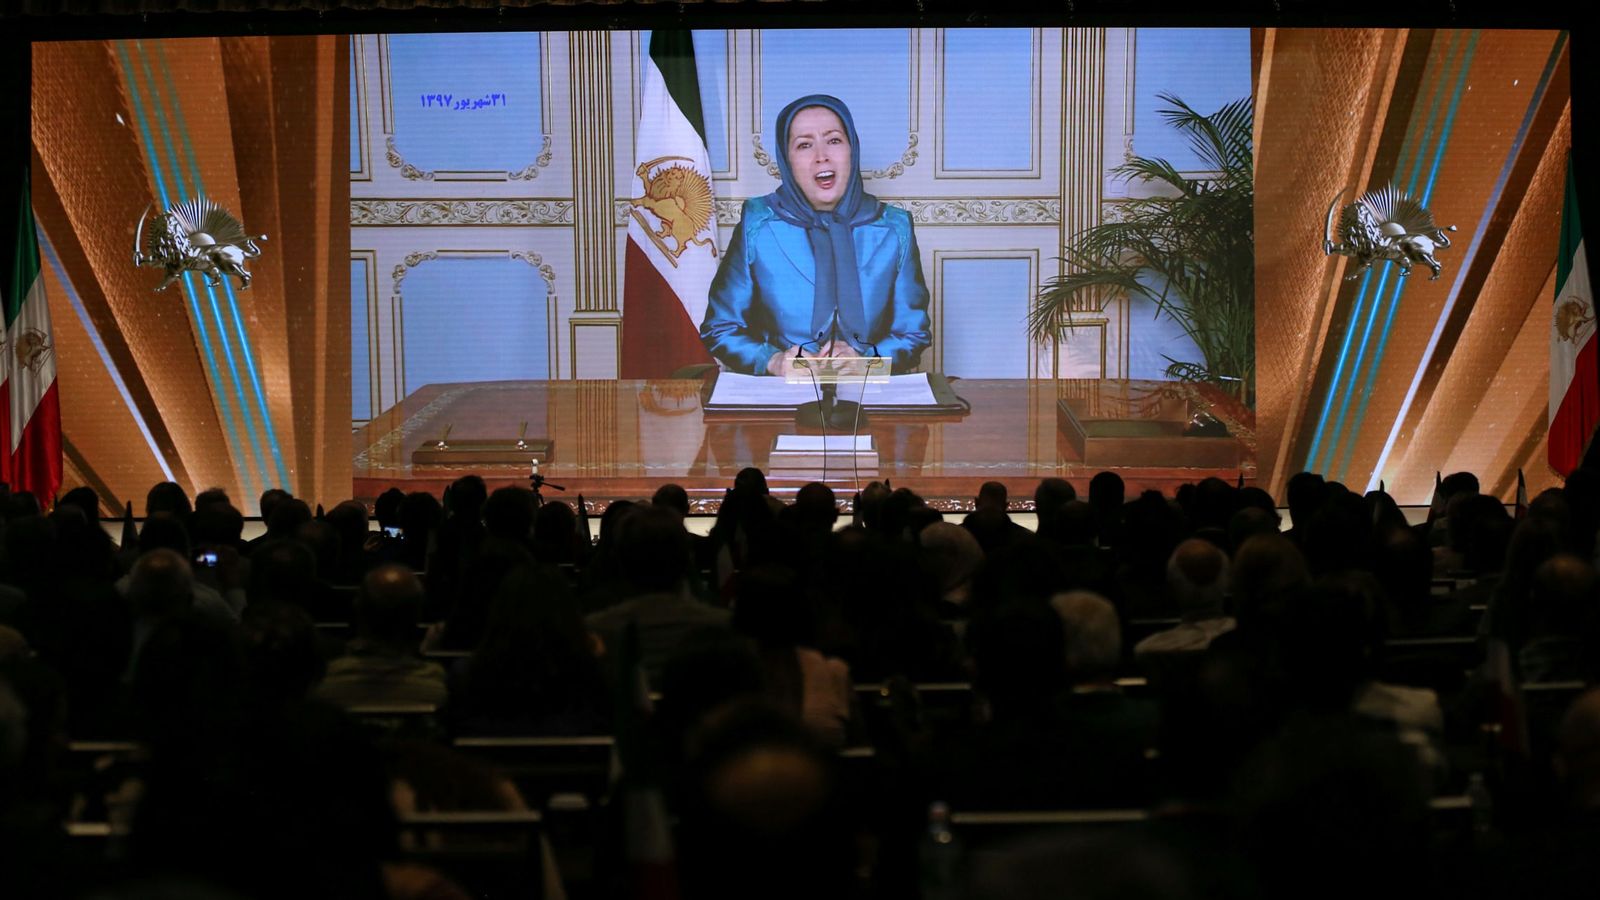 Foto: Maryam Rajavi, presidenta del Consejo Nacional de Resistencia de irán, da un discurso por videoconferencia durante la Cumbre sobre el Levantamiento en Irán en Nueva York, el 22 de septiembre de 2018. (Reuters)